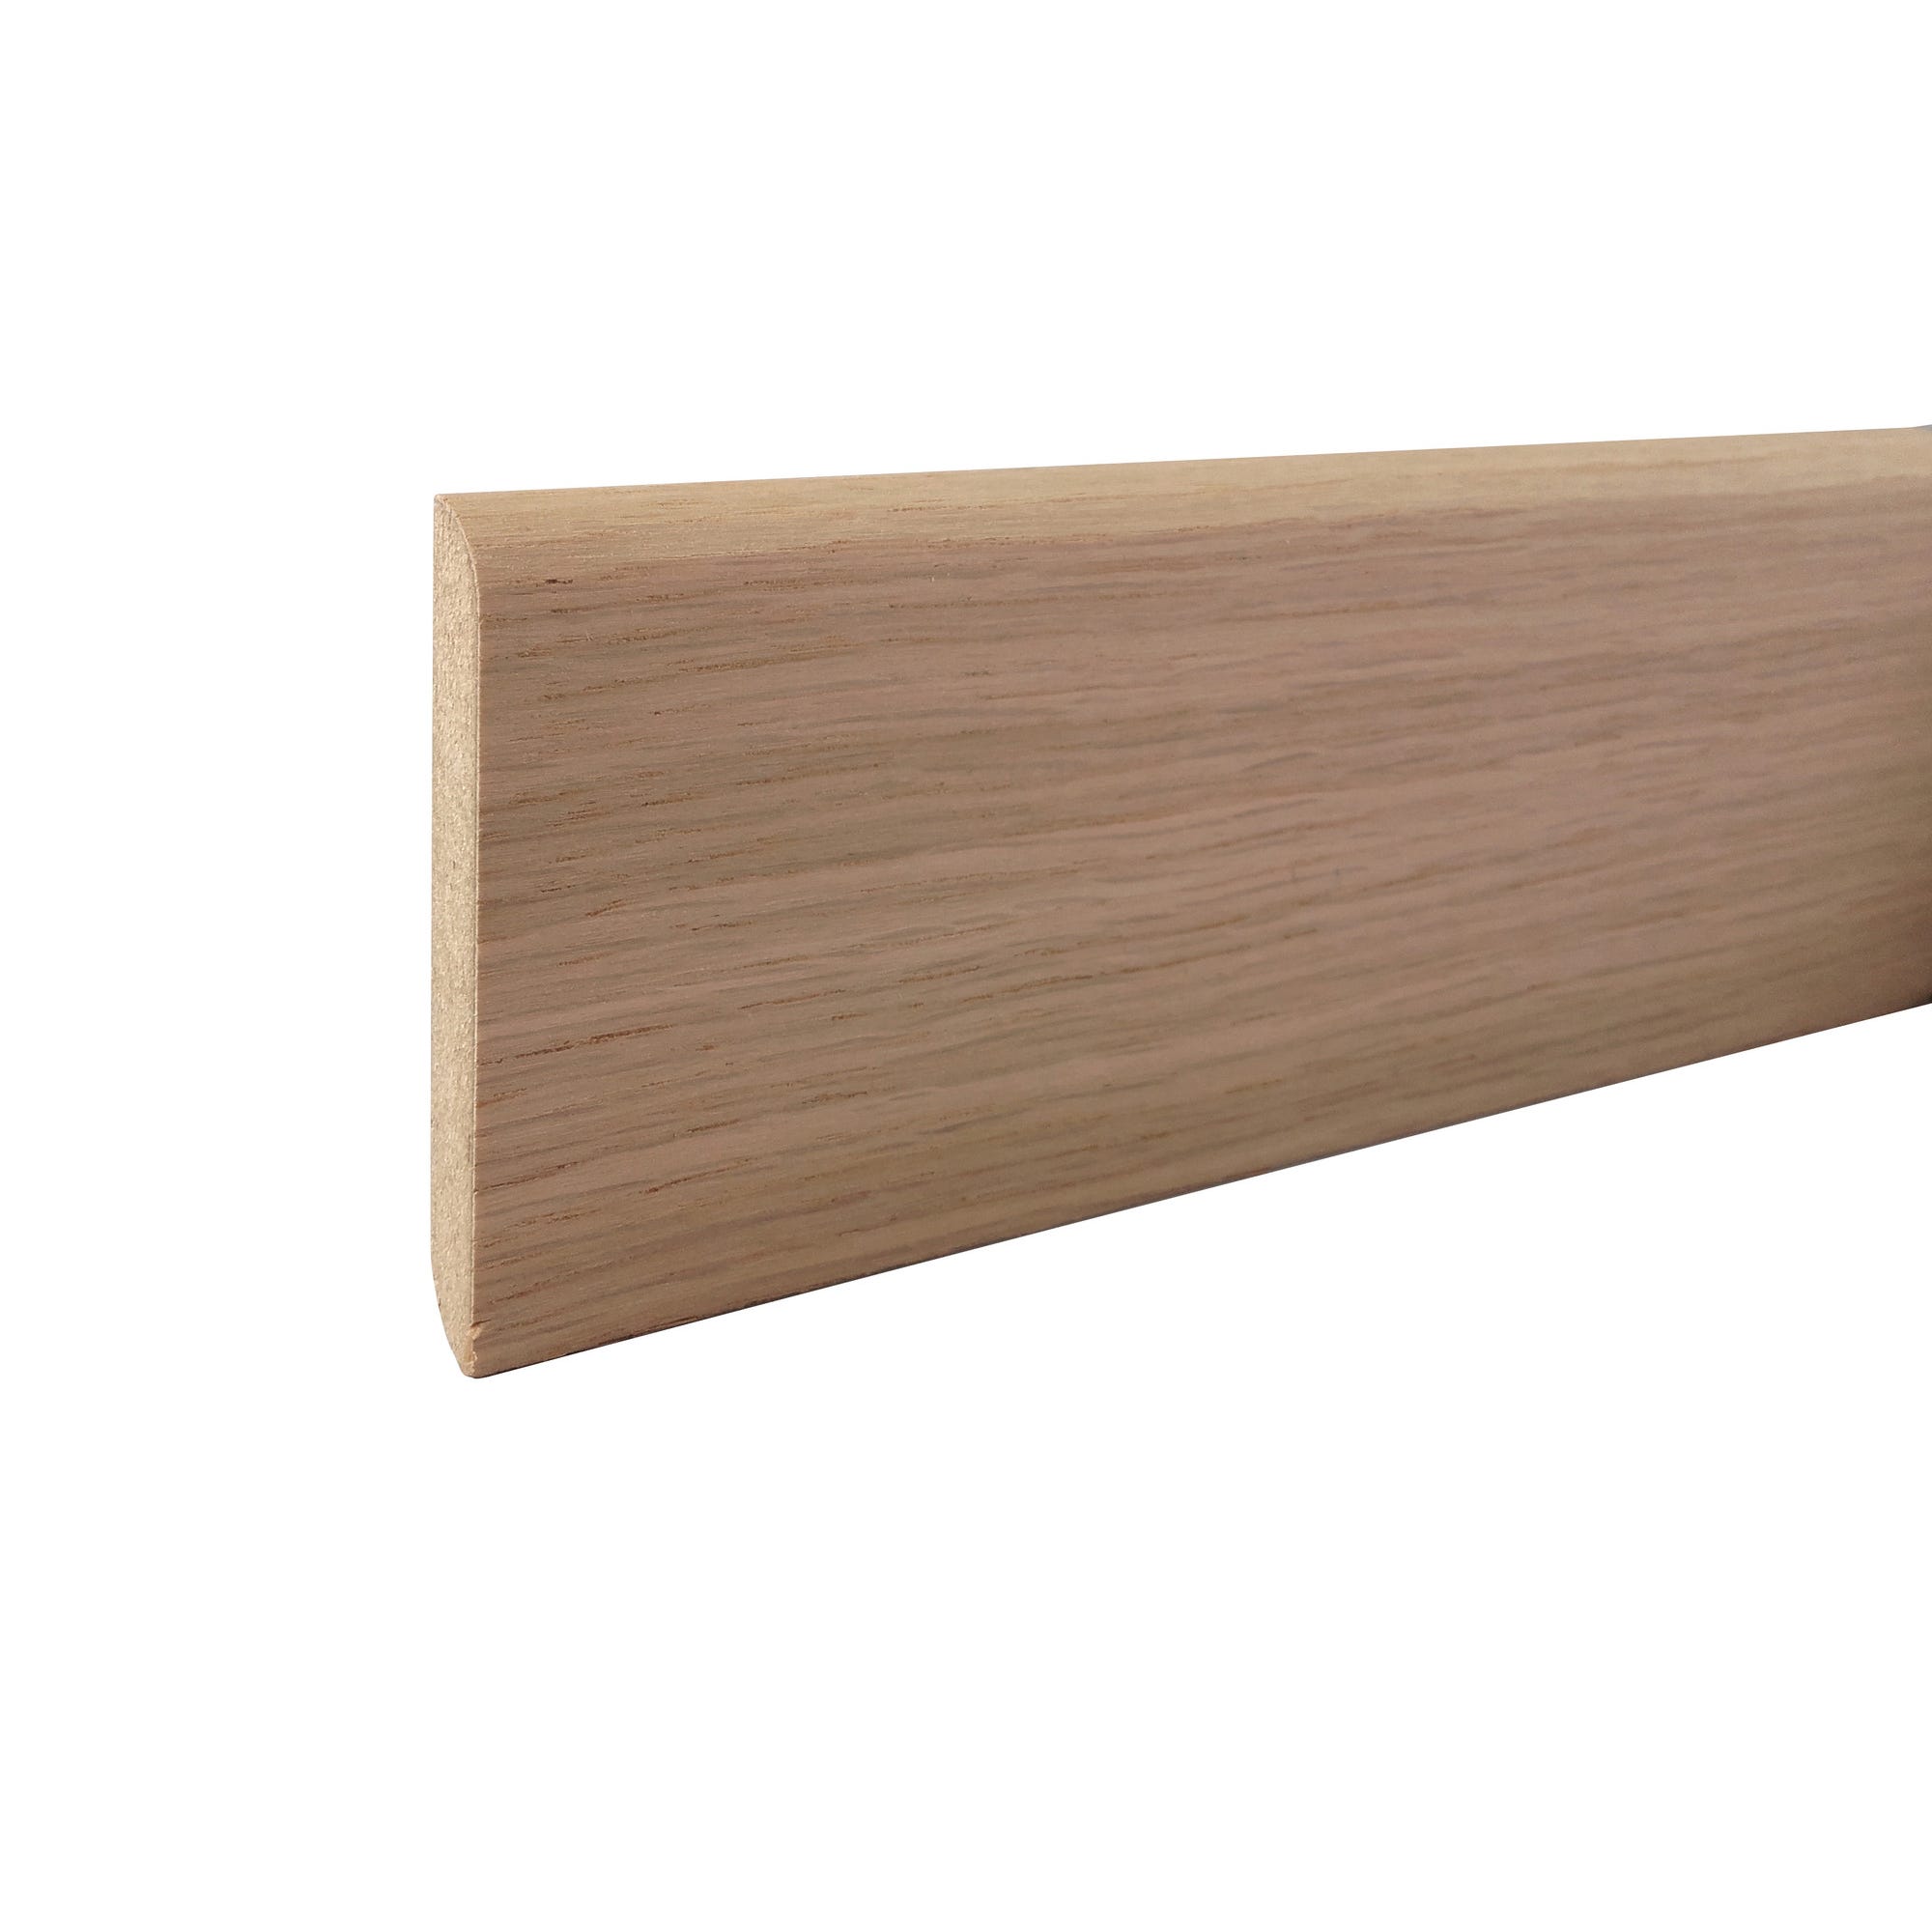 Plinthe arrondie en MDF revêtu placage bois chêne brut l.223 x H.5 x Ep.1,2 cm 0